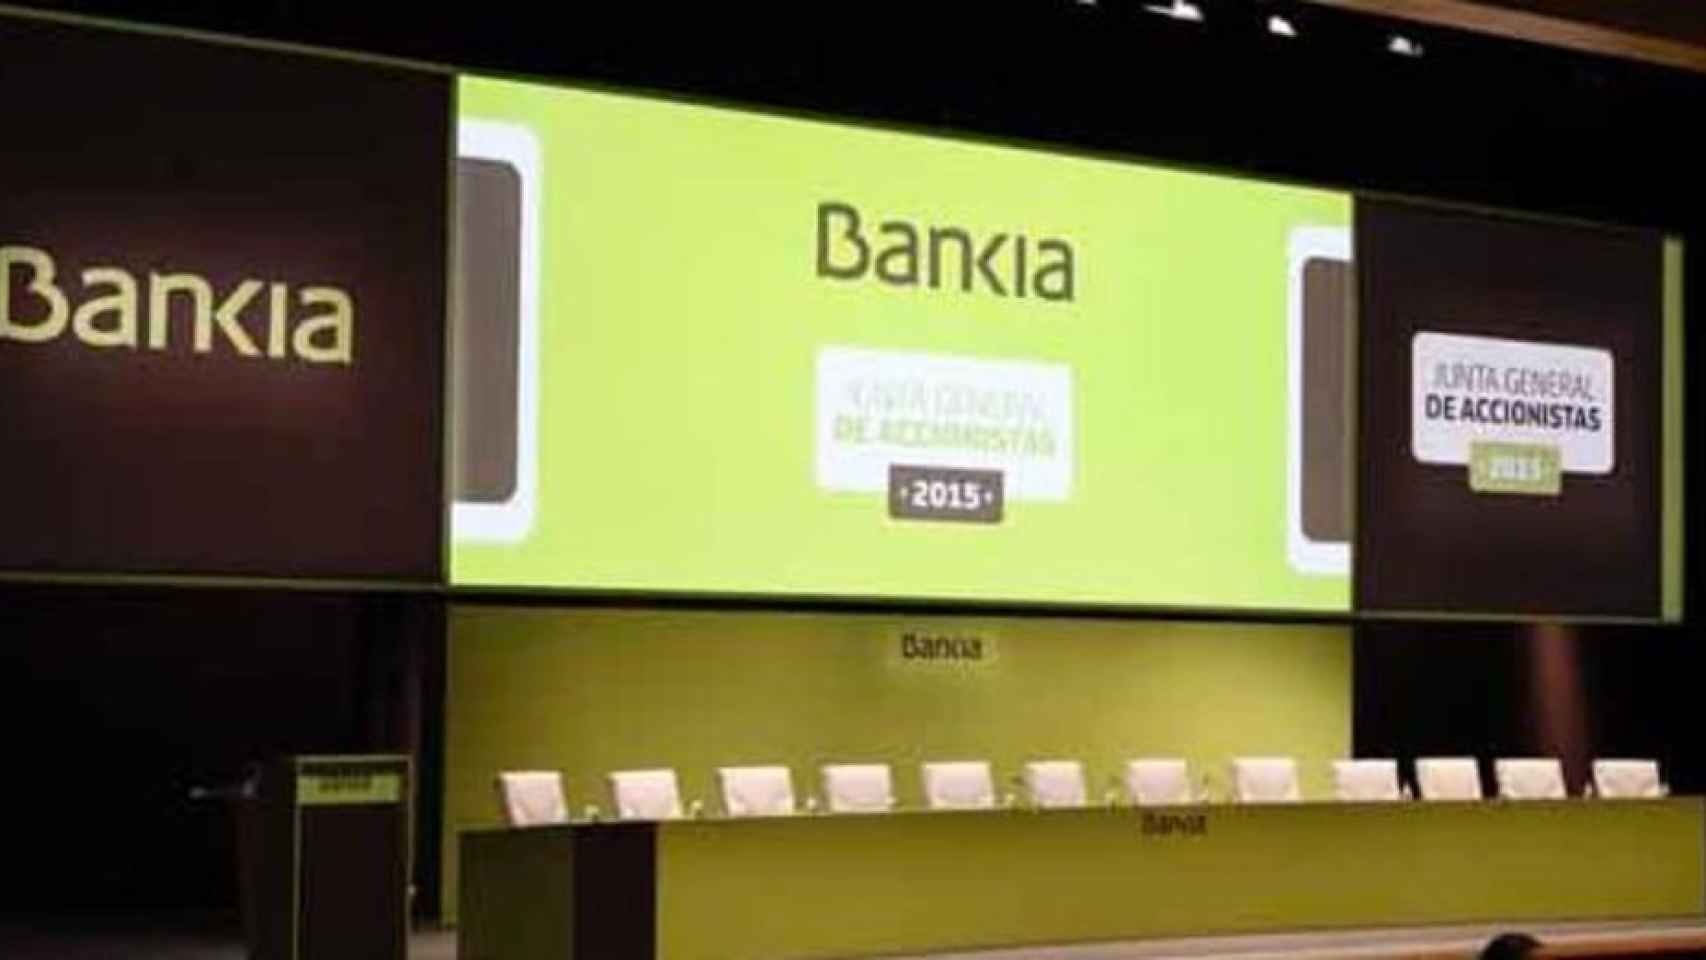 Los accionistas de BMN se convertirán en accionistas de Bankia a partir del viernes